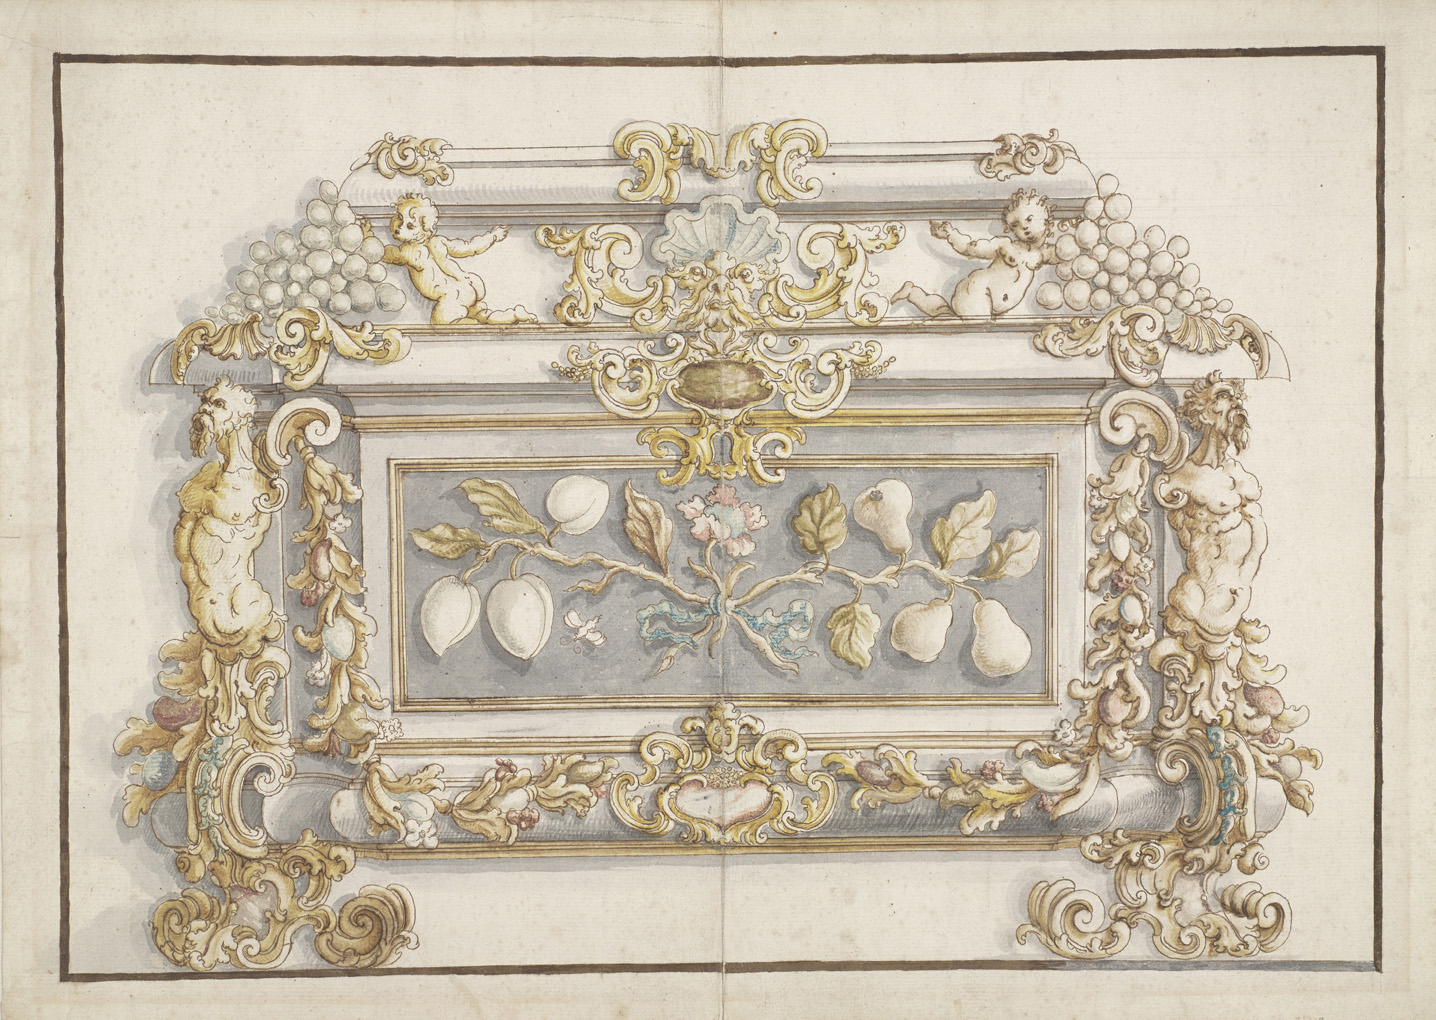 Giovanni Battista Foggini (1651-1725), Projet pour un coffret, avec des panneaux en pierre dure, vers 1710-1715, plume et encre brune, aqu